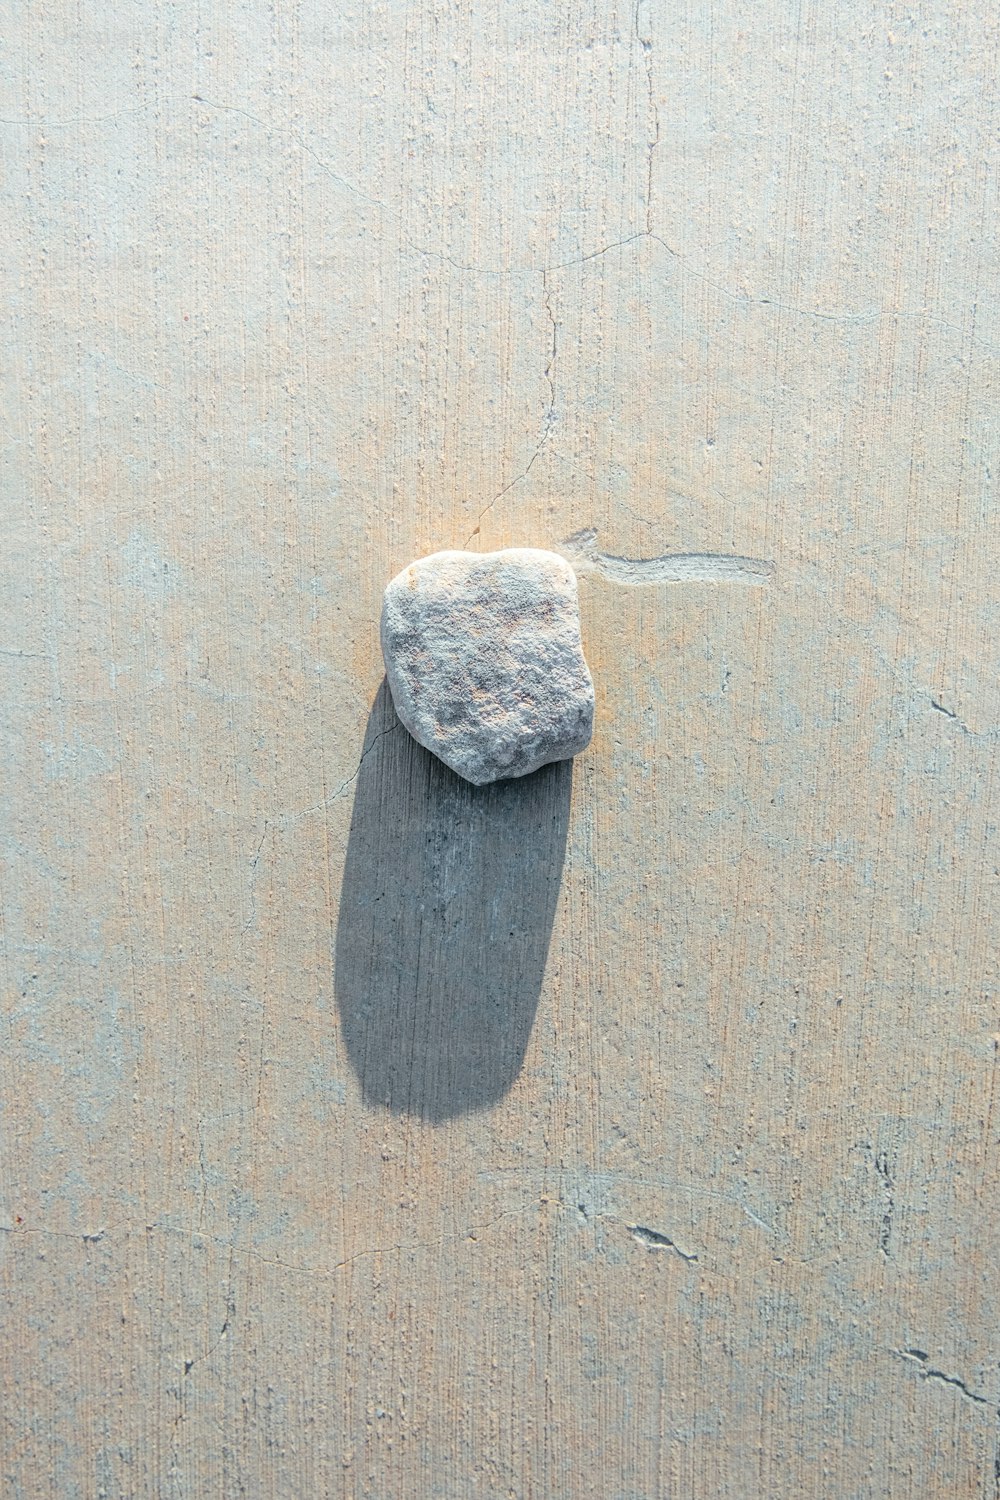 Ein Felsen auf einem Sandstrand